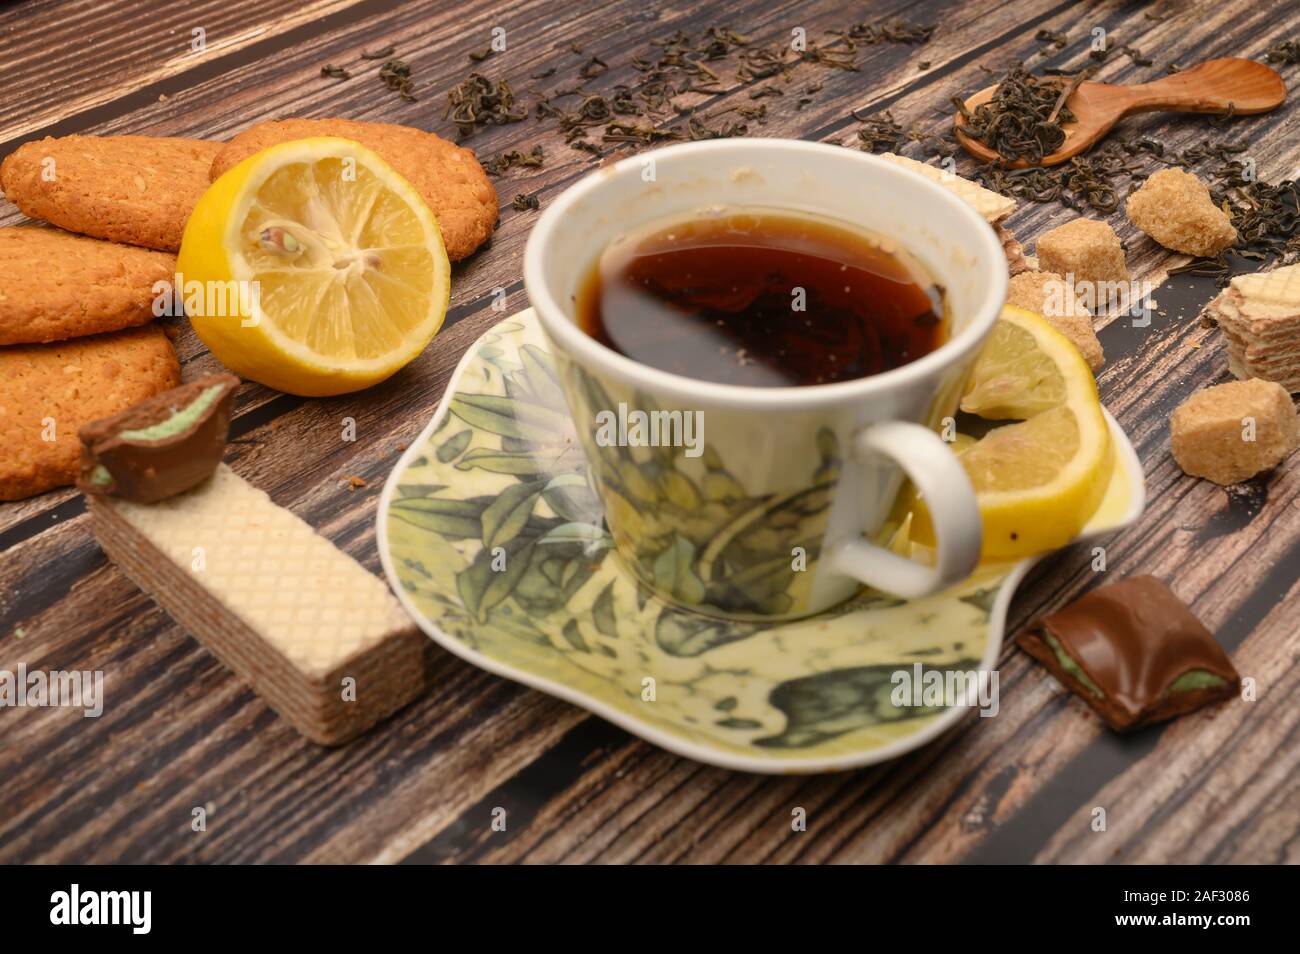 Una tazza di tè nero, spicchi di limone, lo zucchero di canna fette, fiocchi d'avena biscotti, cialde su uno sfondo di legno. Close up Foto Stock